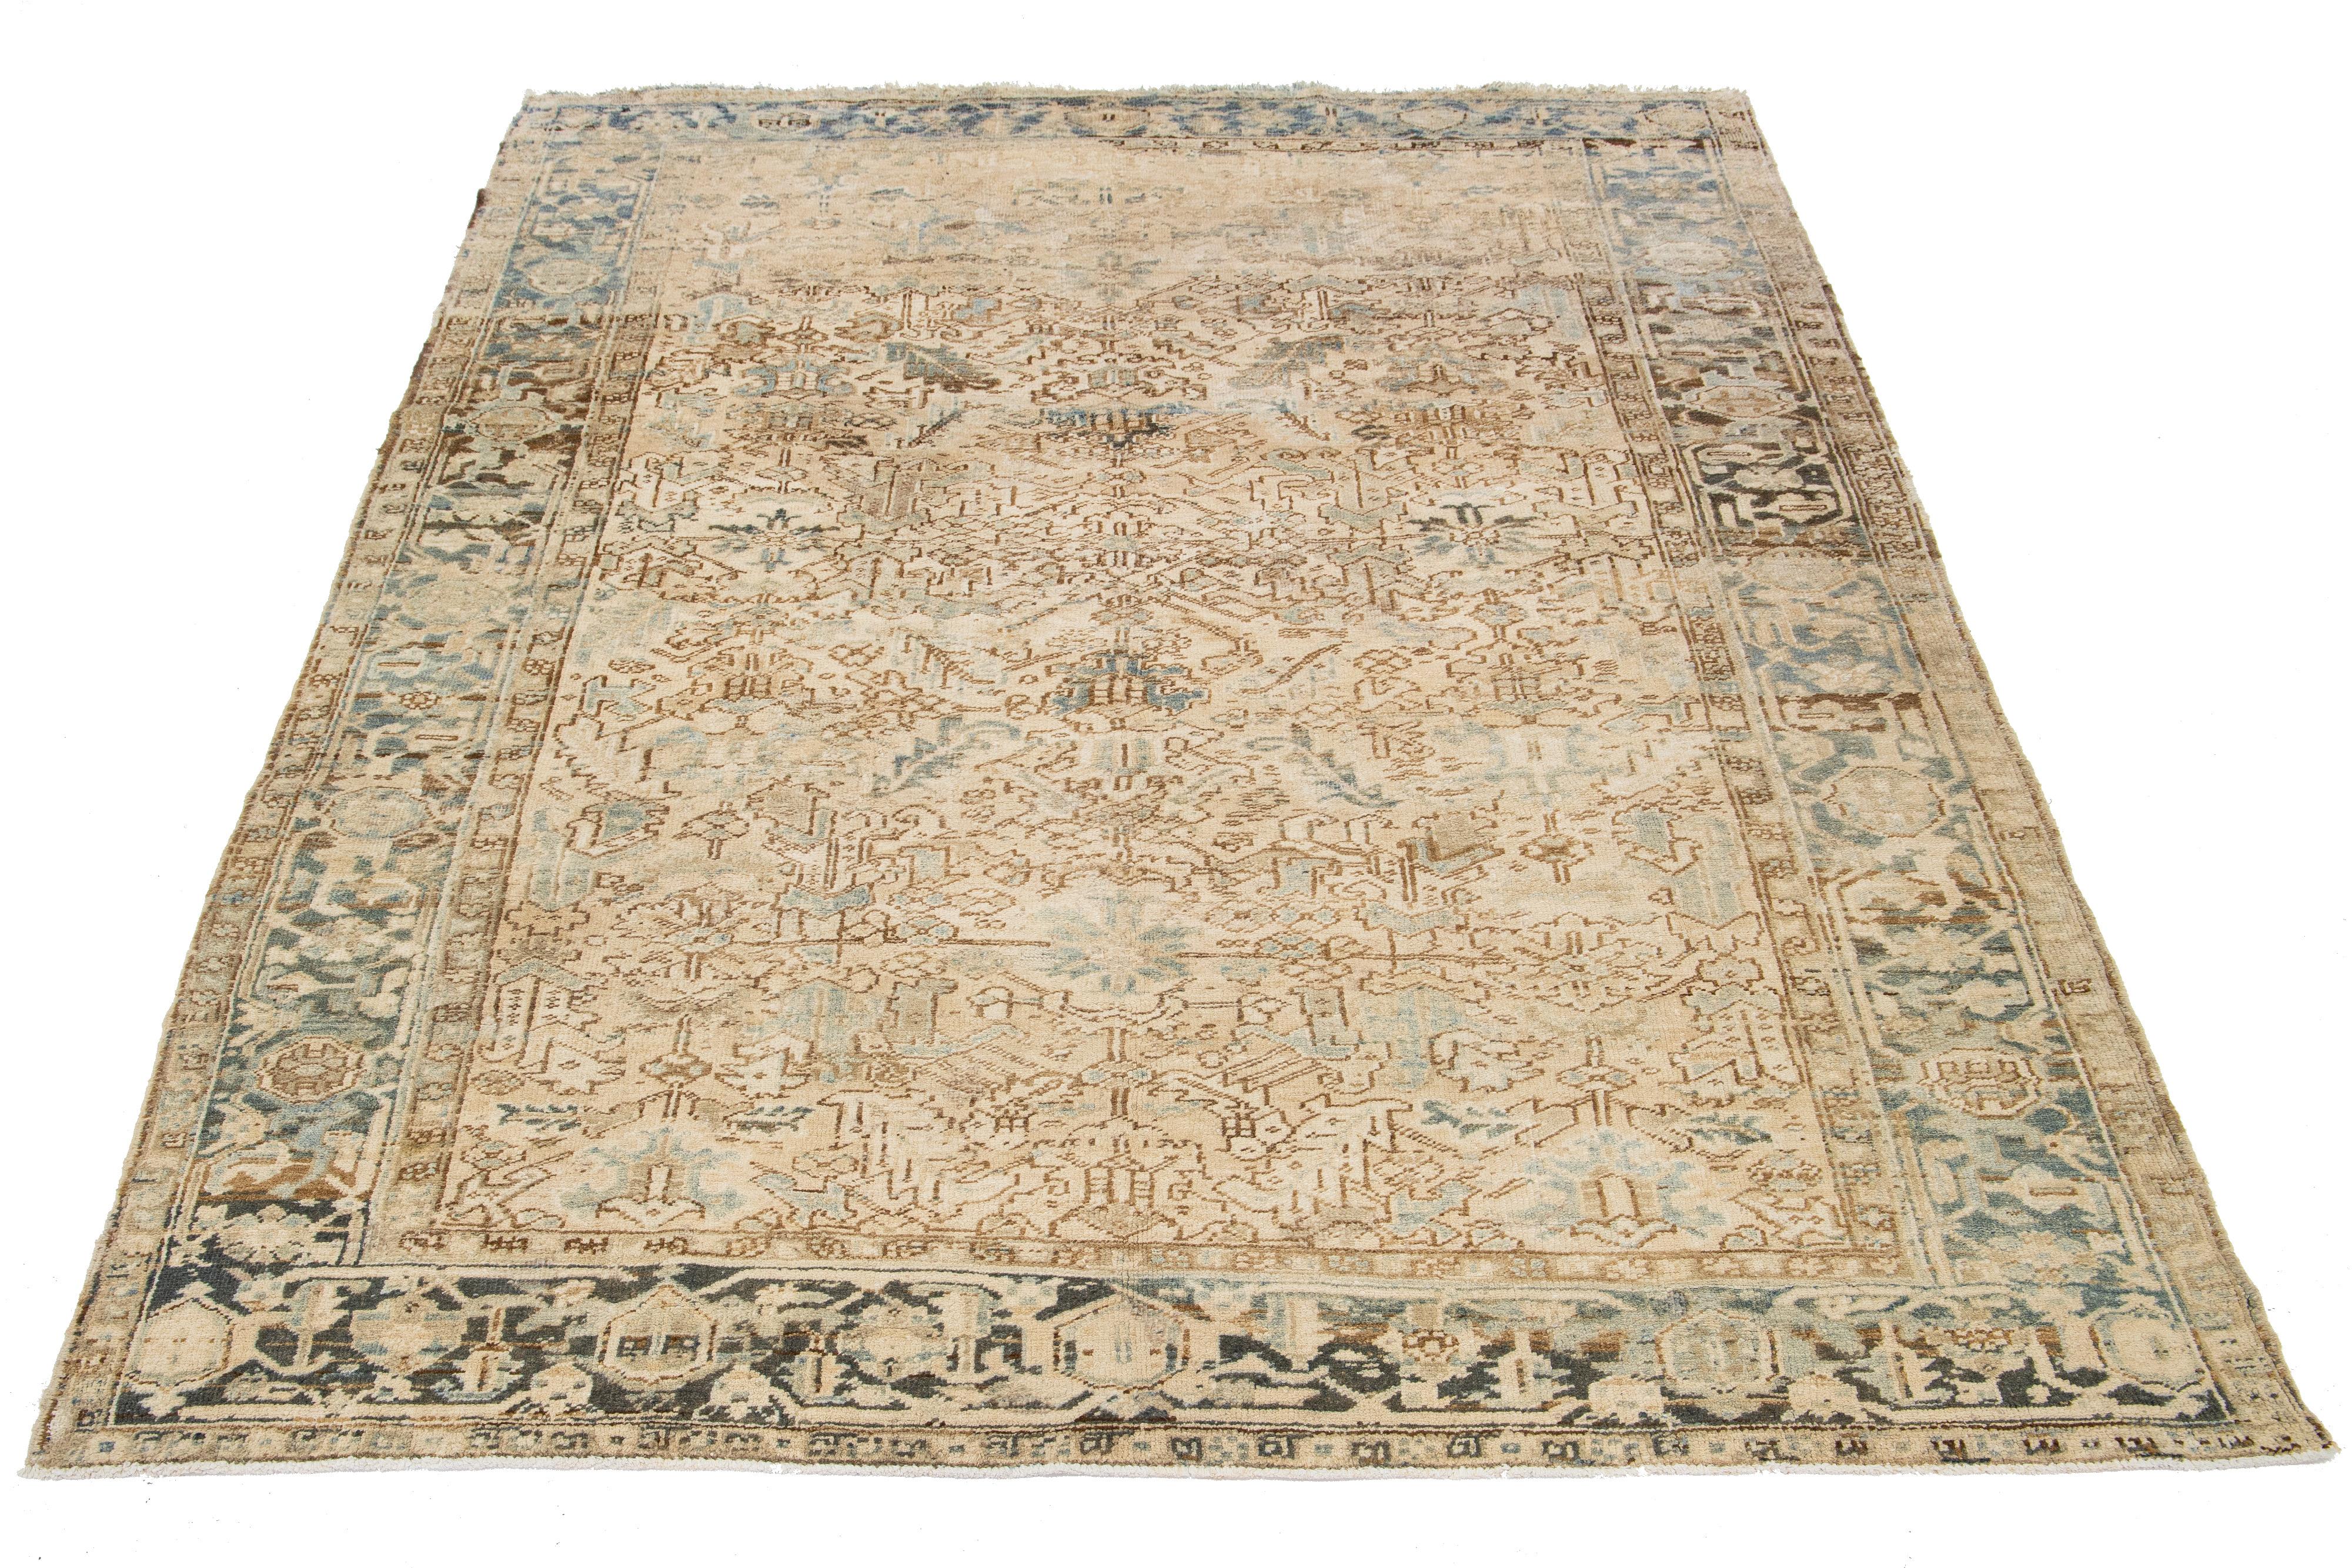 Dieser antike persische Heriz-Teppich ist aus handgeknüpfter Wolle gefertigt. Es zeigt ein fesselndes Allover-Muster in Blau- und Hellbrauntönen auf einem beigen Feld.

Dieser Teppich misst 7'8' x 11'1